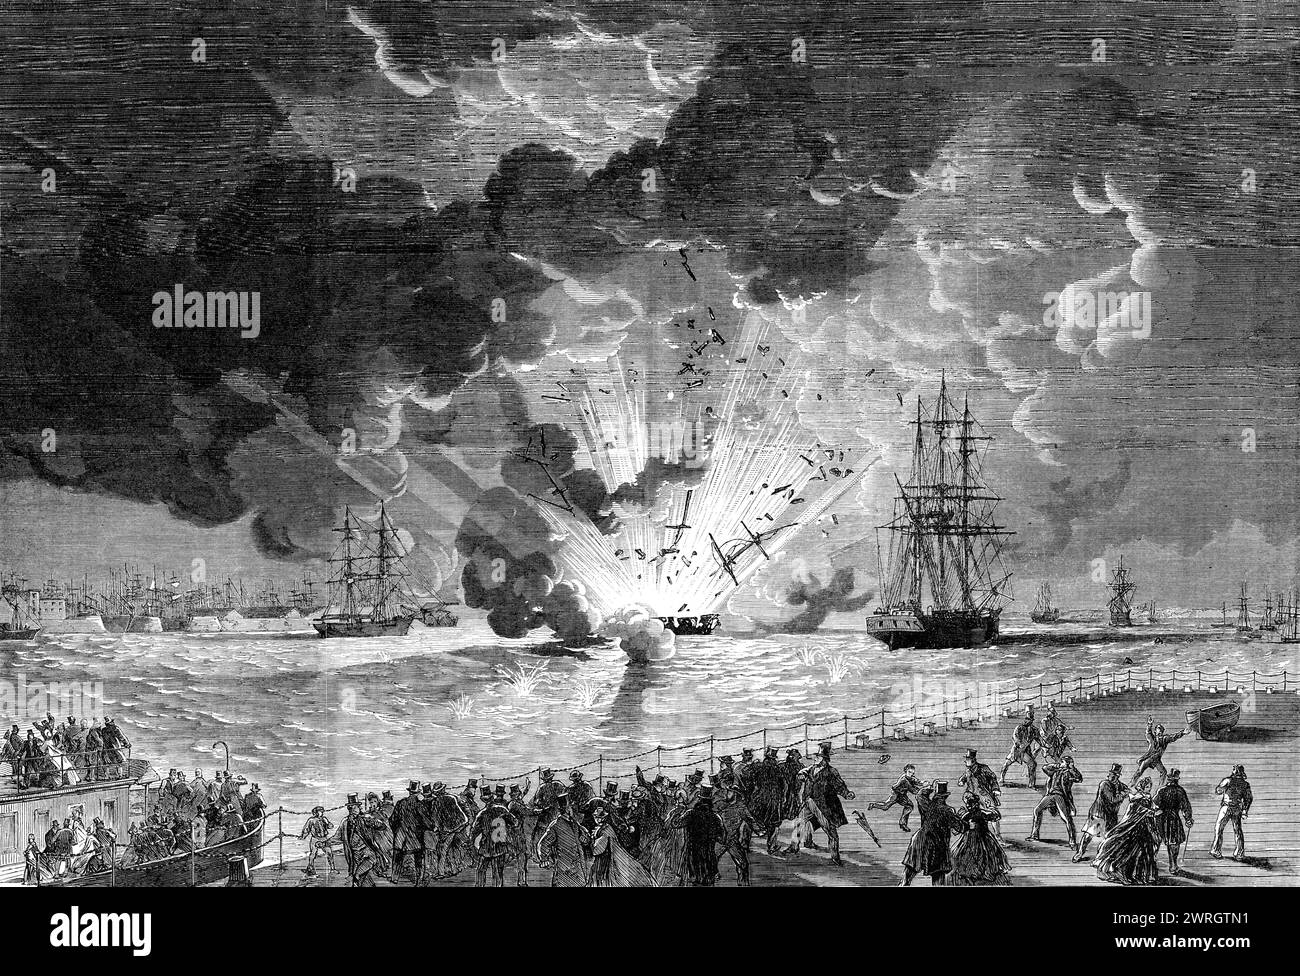 Explosion an Bord des Barque Lottie Schlittens, beladen mit Schießpulver, in der Mersey, gesehen von der Cheshire Seite, 1864. Gravur nach einer Skizze von Mr. Wood. "...der Lottie Schlitten mit 11&#xbd; Tonnen Schießpulver an Bord explodierte... dieses Schiff nahm Pulver von den Magazinbooten vor Tranmere auf, und hatte elf Tonnen verstaut, als gegen 18:00 Uhr, als der Steward in der Kabine war, die Lampen mit Paraffinöl zu beschneiden, ein Teil davon explodierte und die Bettvorhänge des Kapitäns entzündete... die Crew... wurde von der vorbeifahrenden Rock Ferry - Boat Wasp abgeholt... die Flammen hatten sich überall ausgebreitet Stockfoto